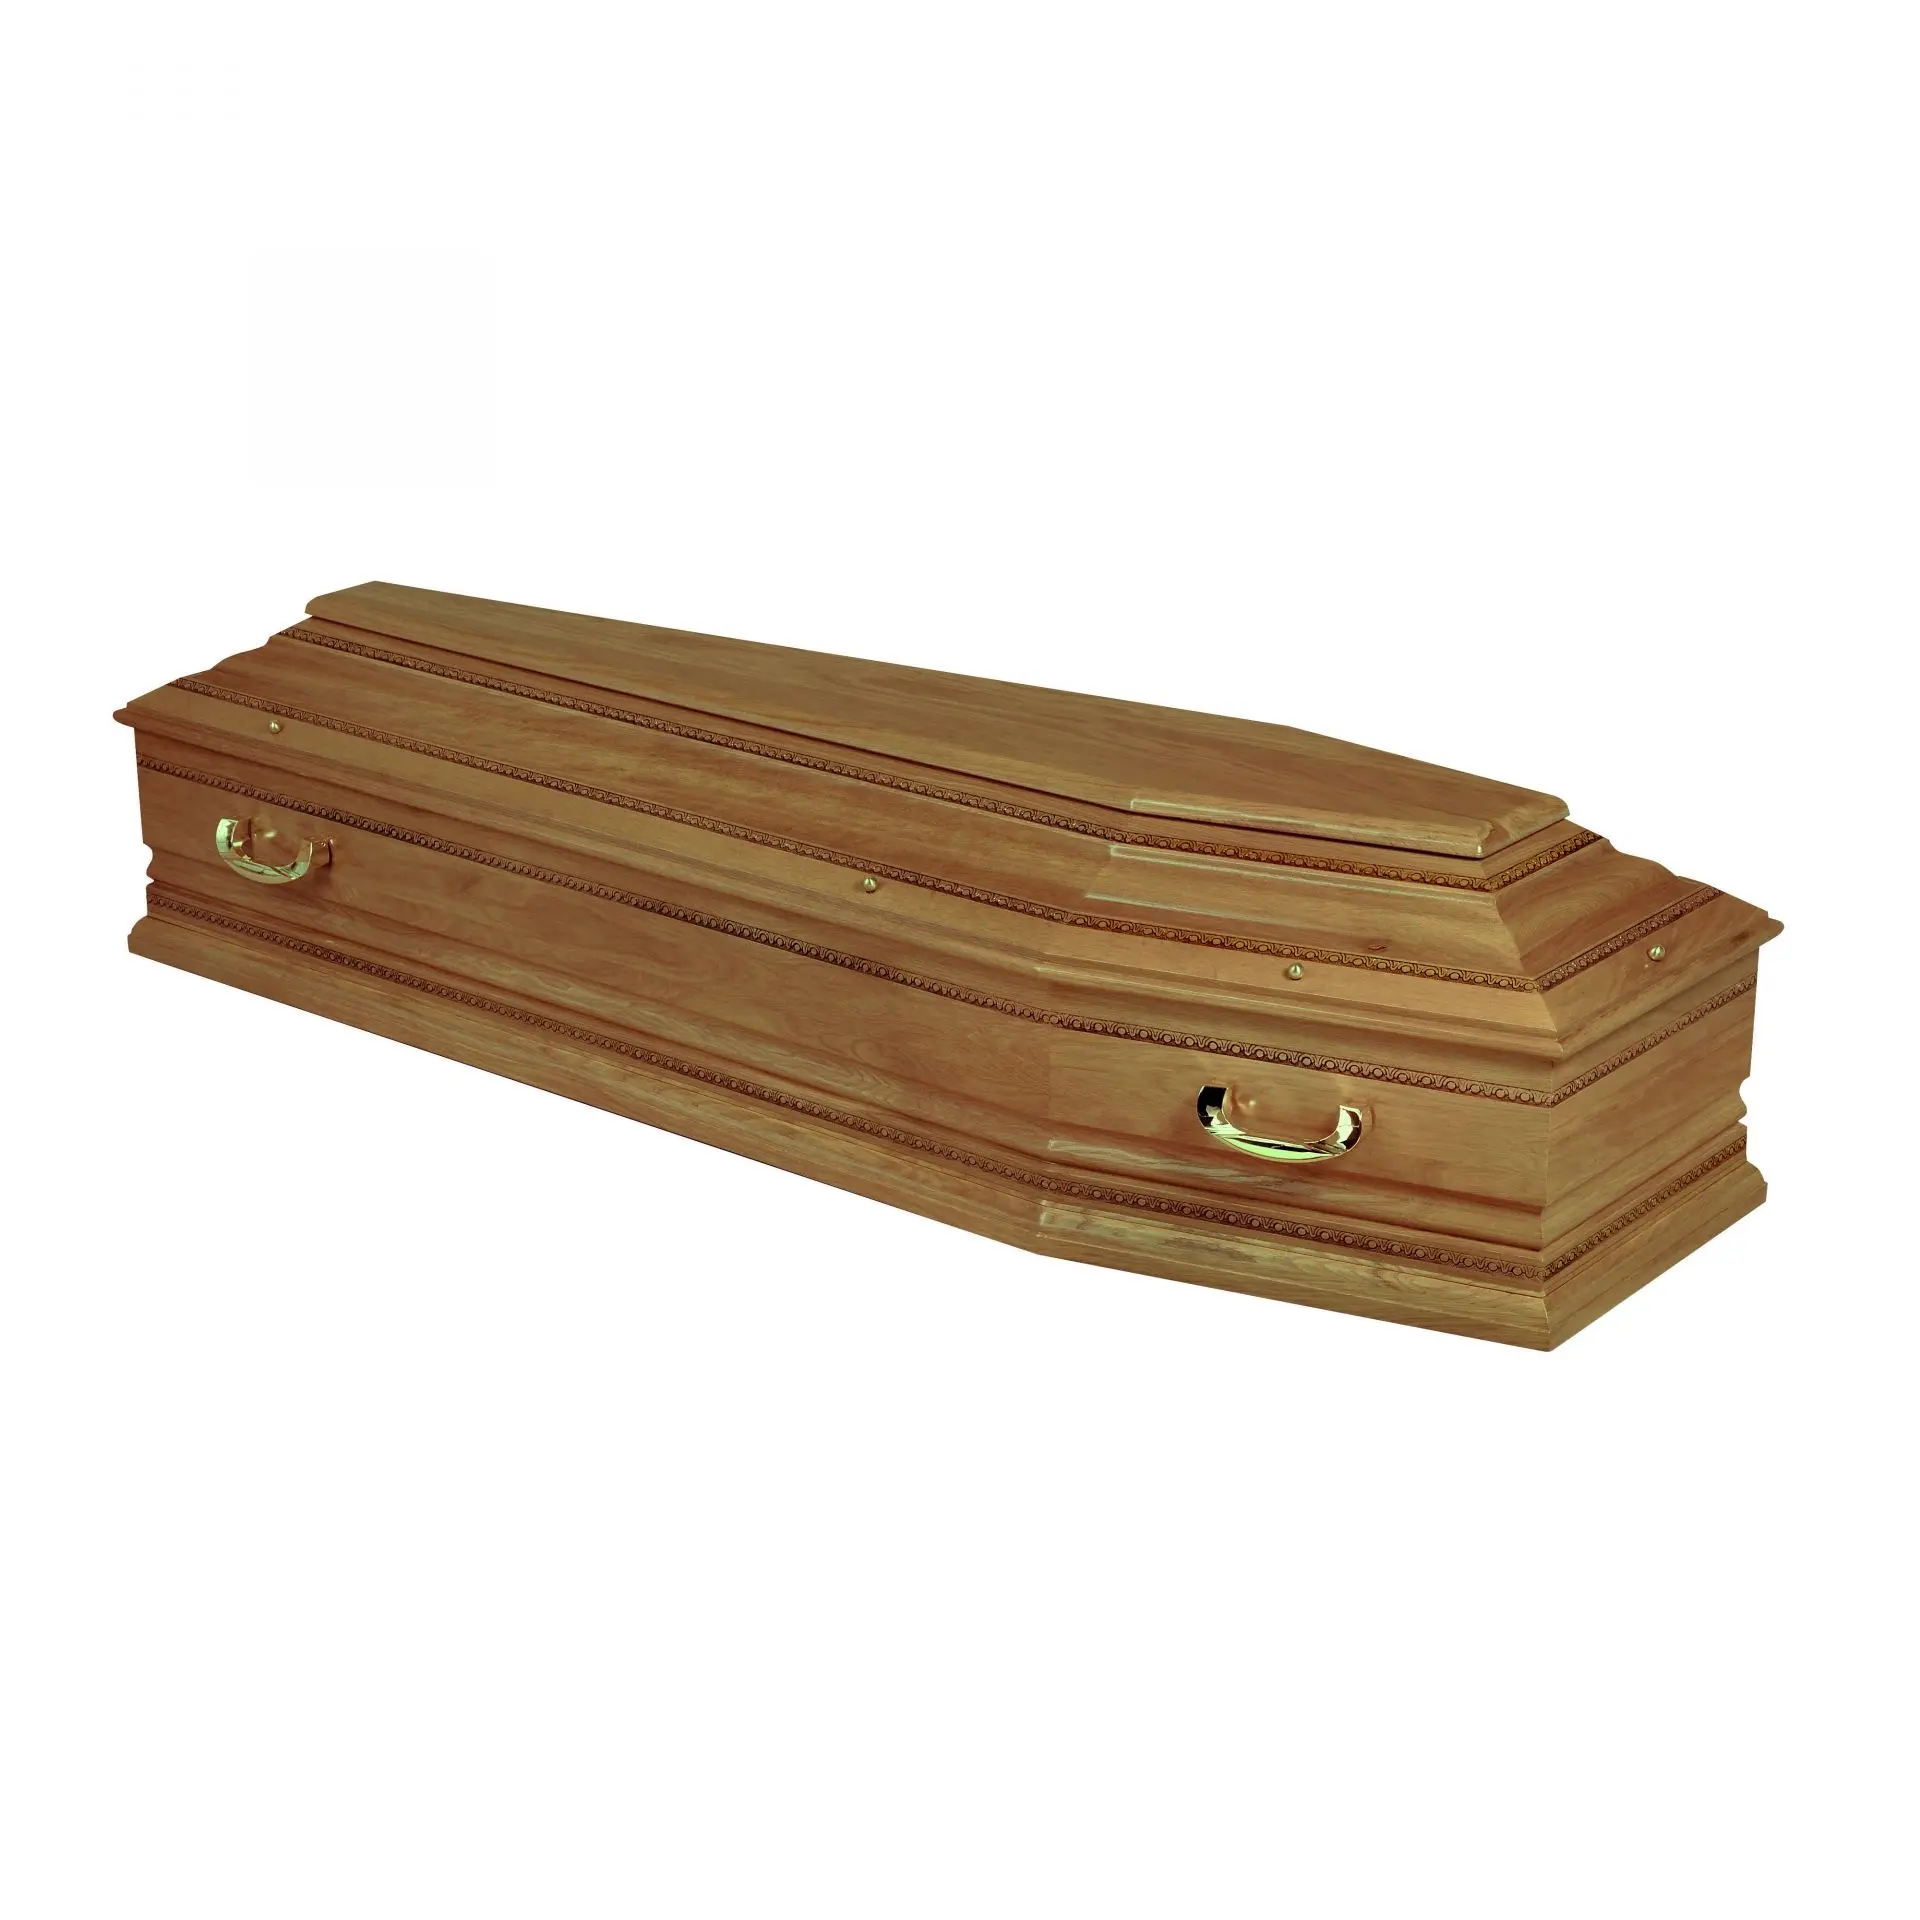 死者のための競争価格製造固体木製ヨーロピアンスタイル棺